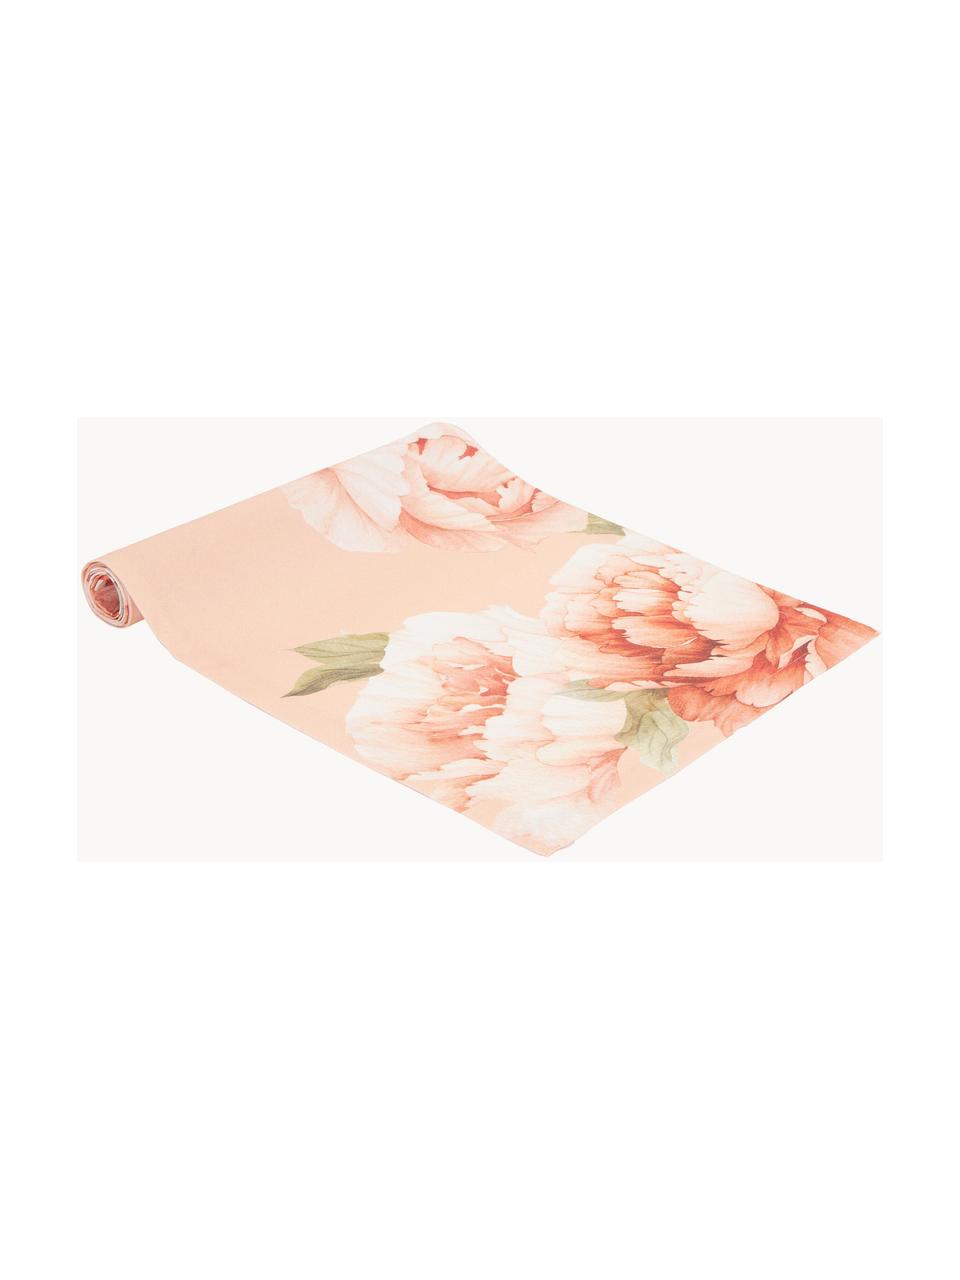 Chemin de table en coton imprimé fleurs Peony, 100 % coton, Rose, motif floral, larg. 40 x long. 145 cm